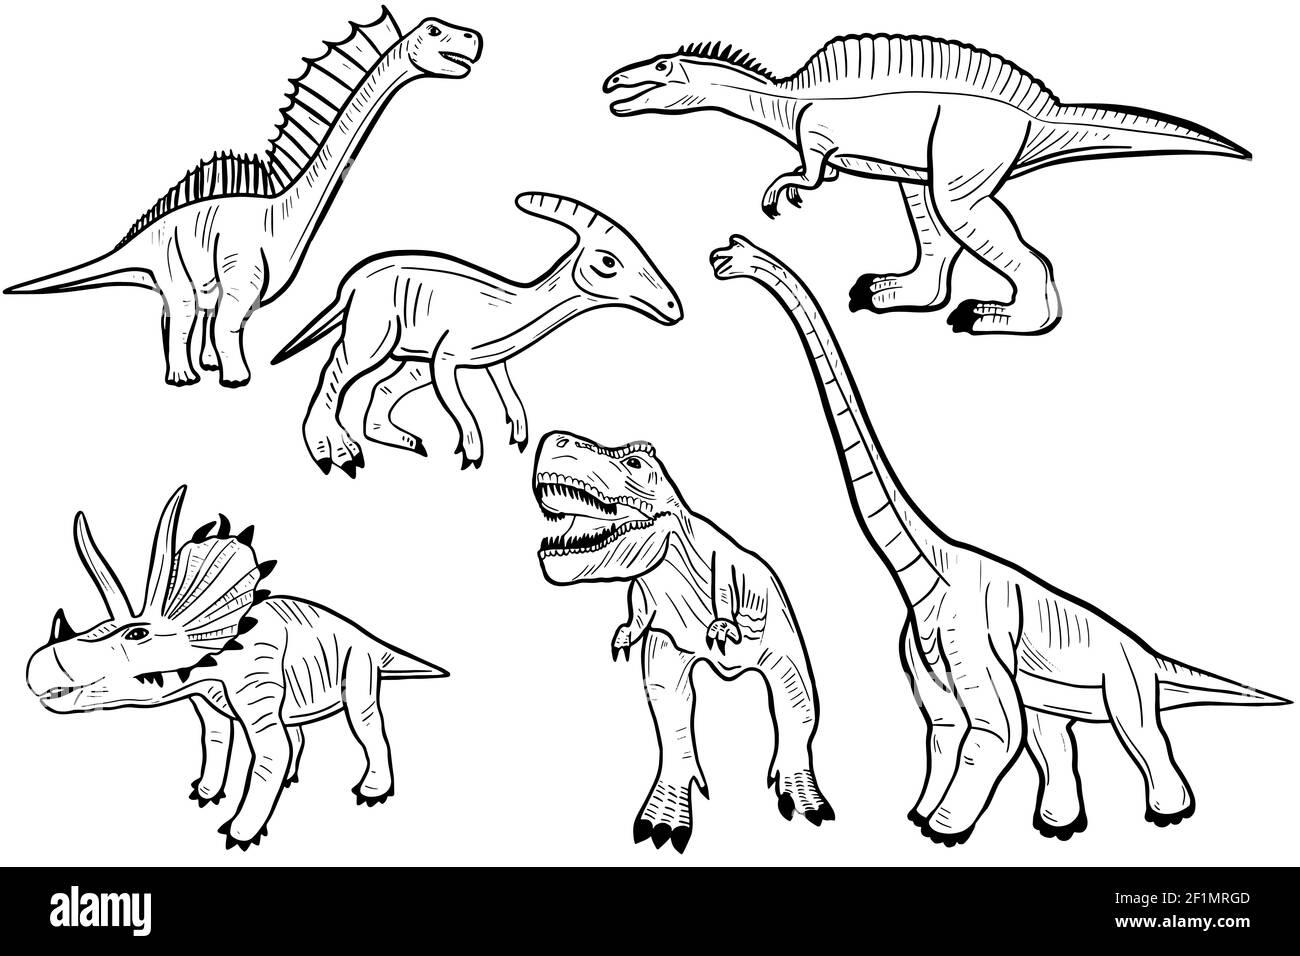 Set di dinosauri. Schizzo di vari dinosauri preistorici. Disegno a mano libera, Jurassic Animals.Vector. Illustrazione Vettoriale